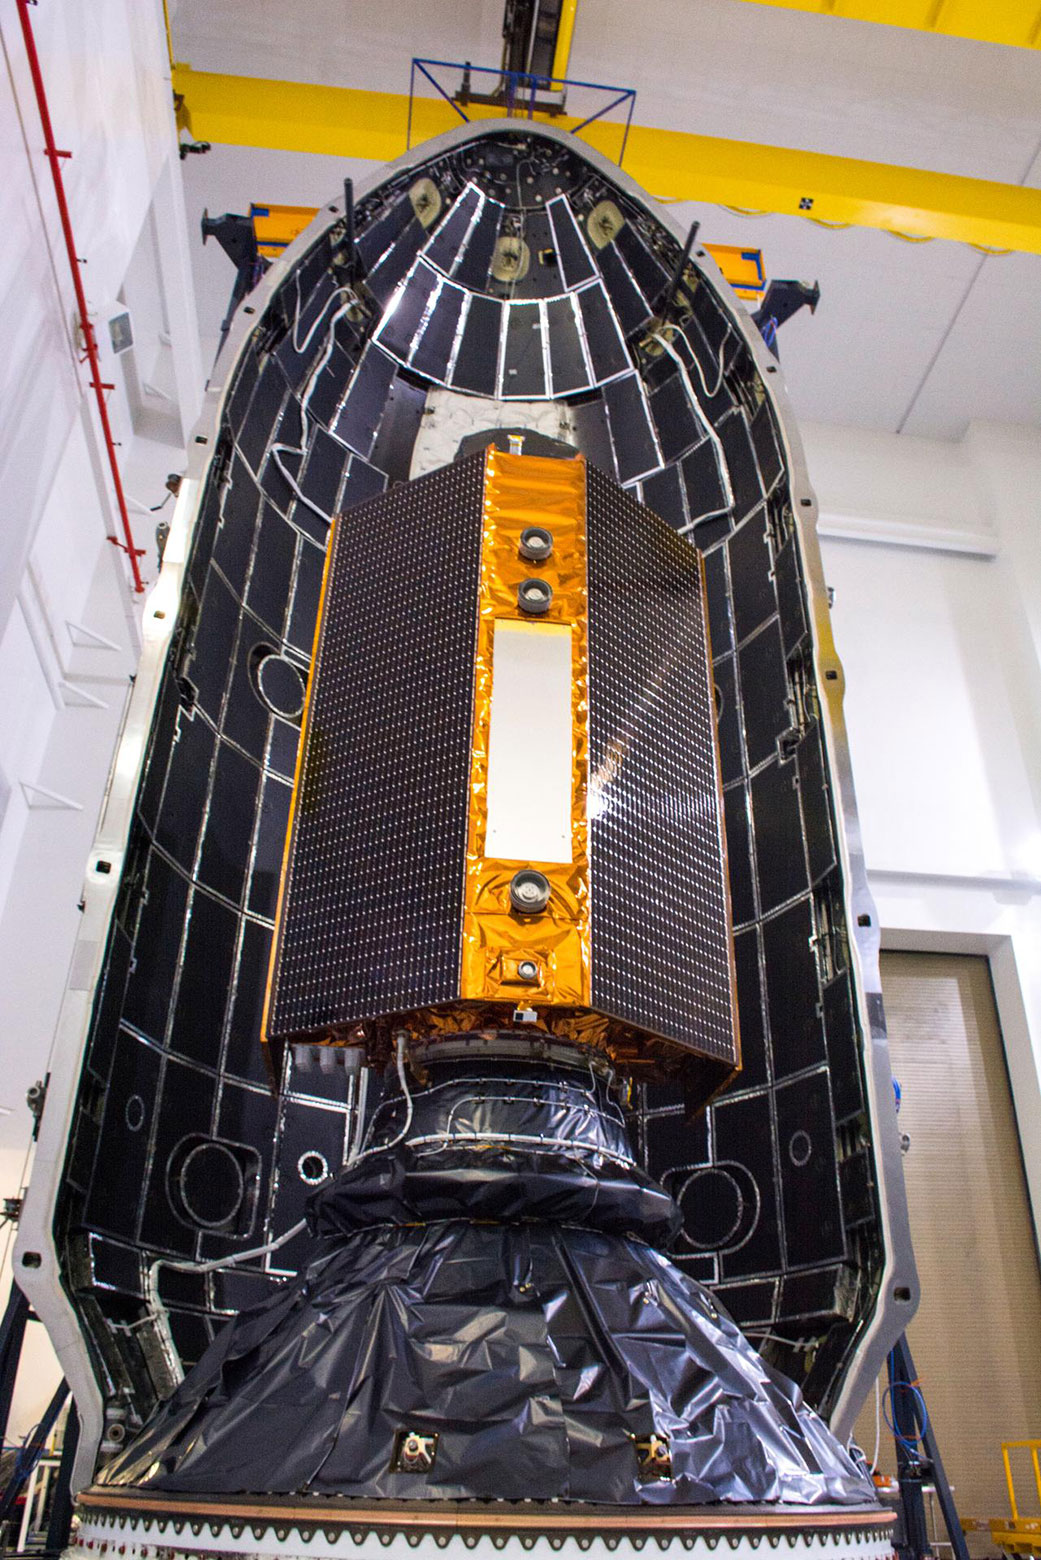 Sentinel-6 Michael Freilich satellite